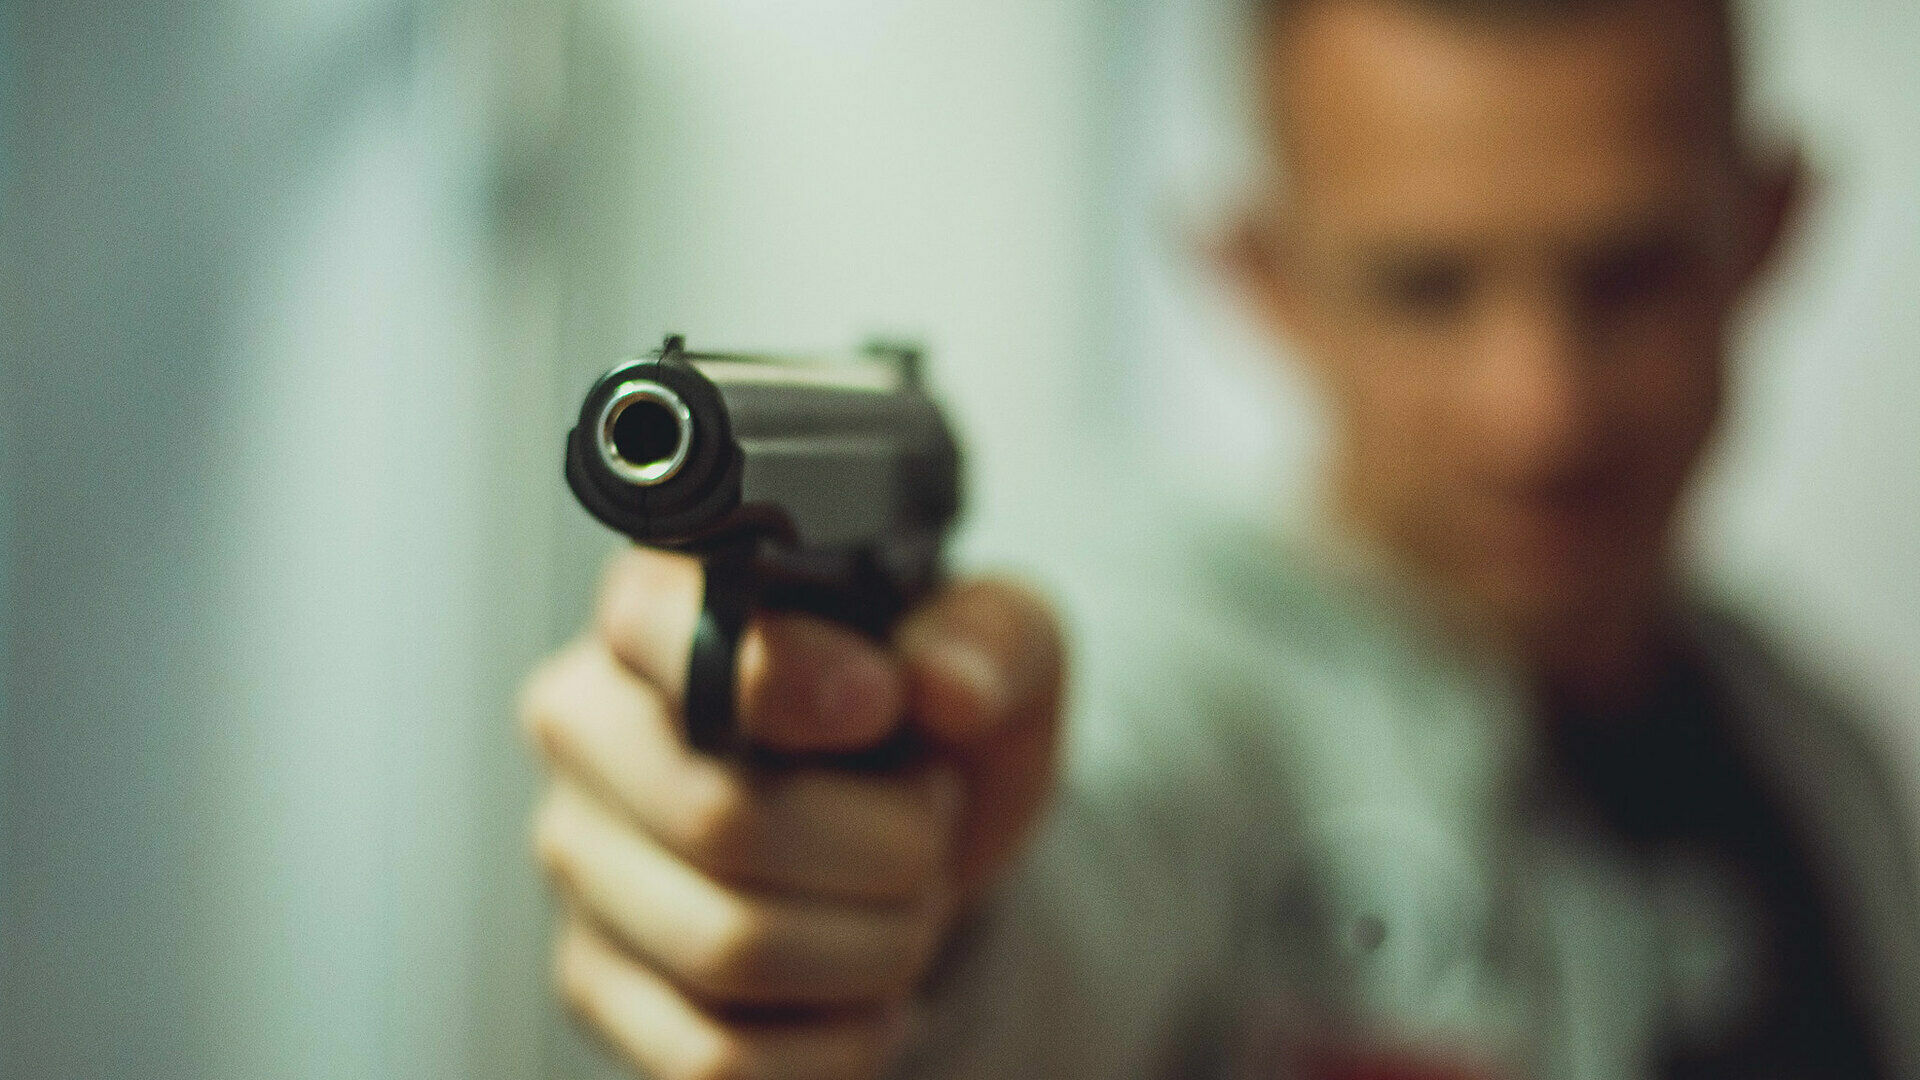 Хотел тишины: волгоградец пошел с пистолетом выяснять отношения с меломанами